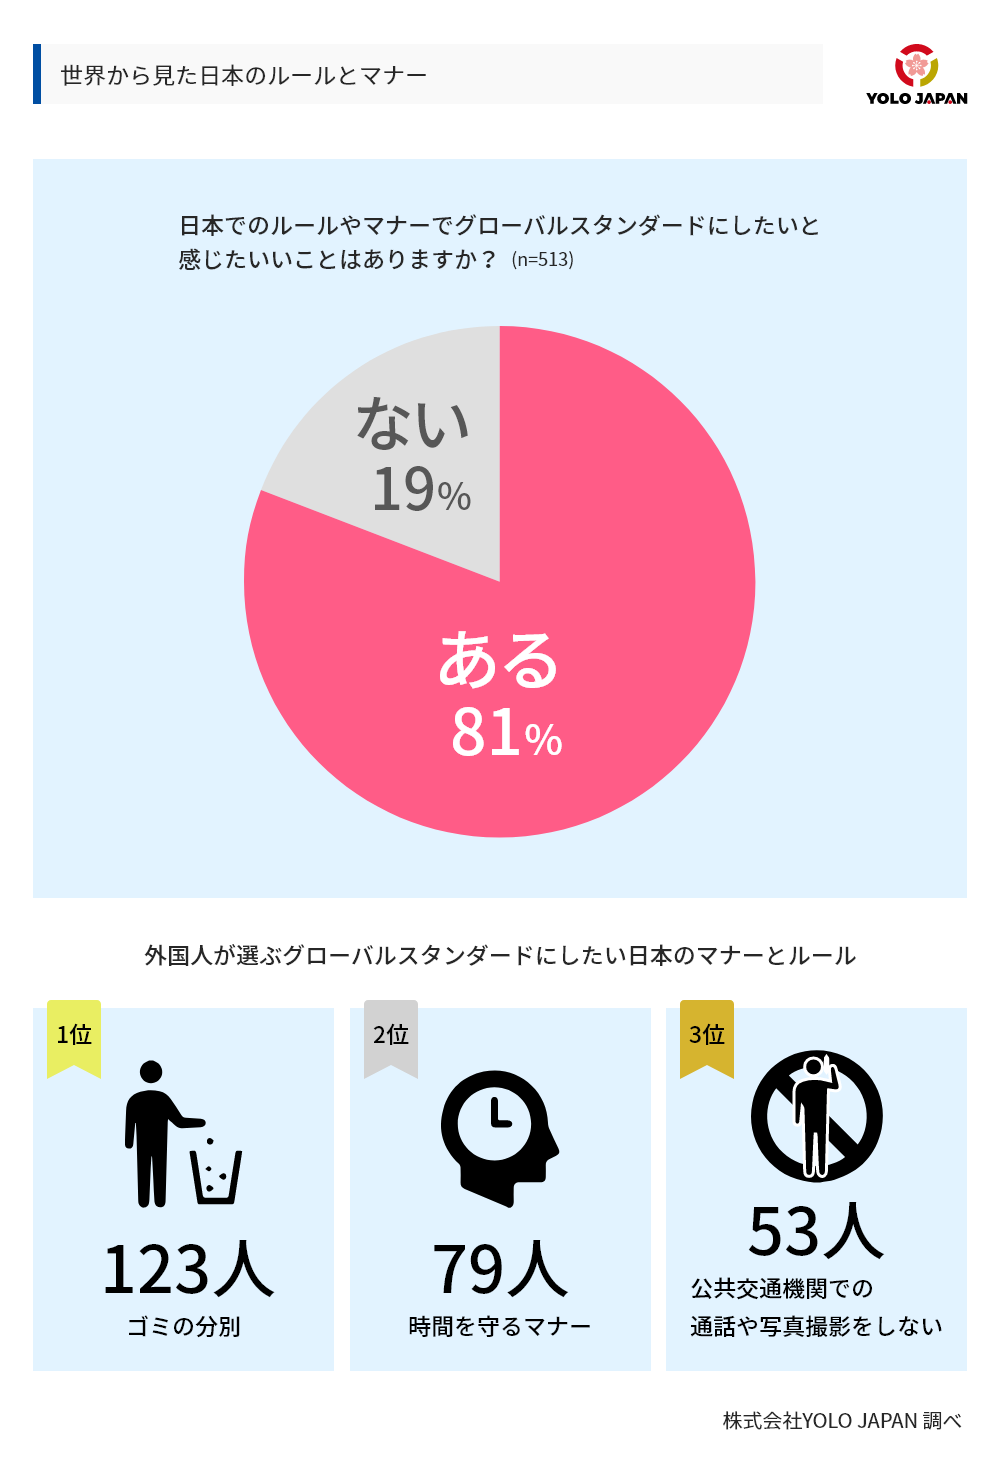 世界から見た日本のルールとマナーについてのグラフ。日本でのルールやマナーでグローバルスタンダードにしたいと感じたいいことはありますか？という設問に対し、513人中81％があると回答。外国人が選んだグローバルスタンダードにしたい日本のマナーとルールは1位がゴミの分別（123人）、2位が時間を守るマナー（79人）、3位が公共交通機関での通話や写真撮影をしない（53人）であった。